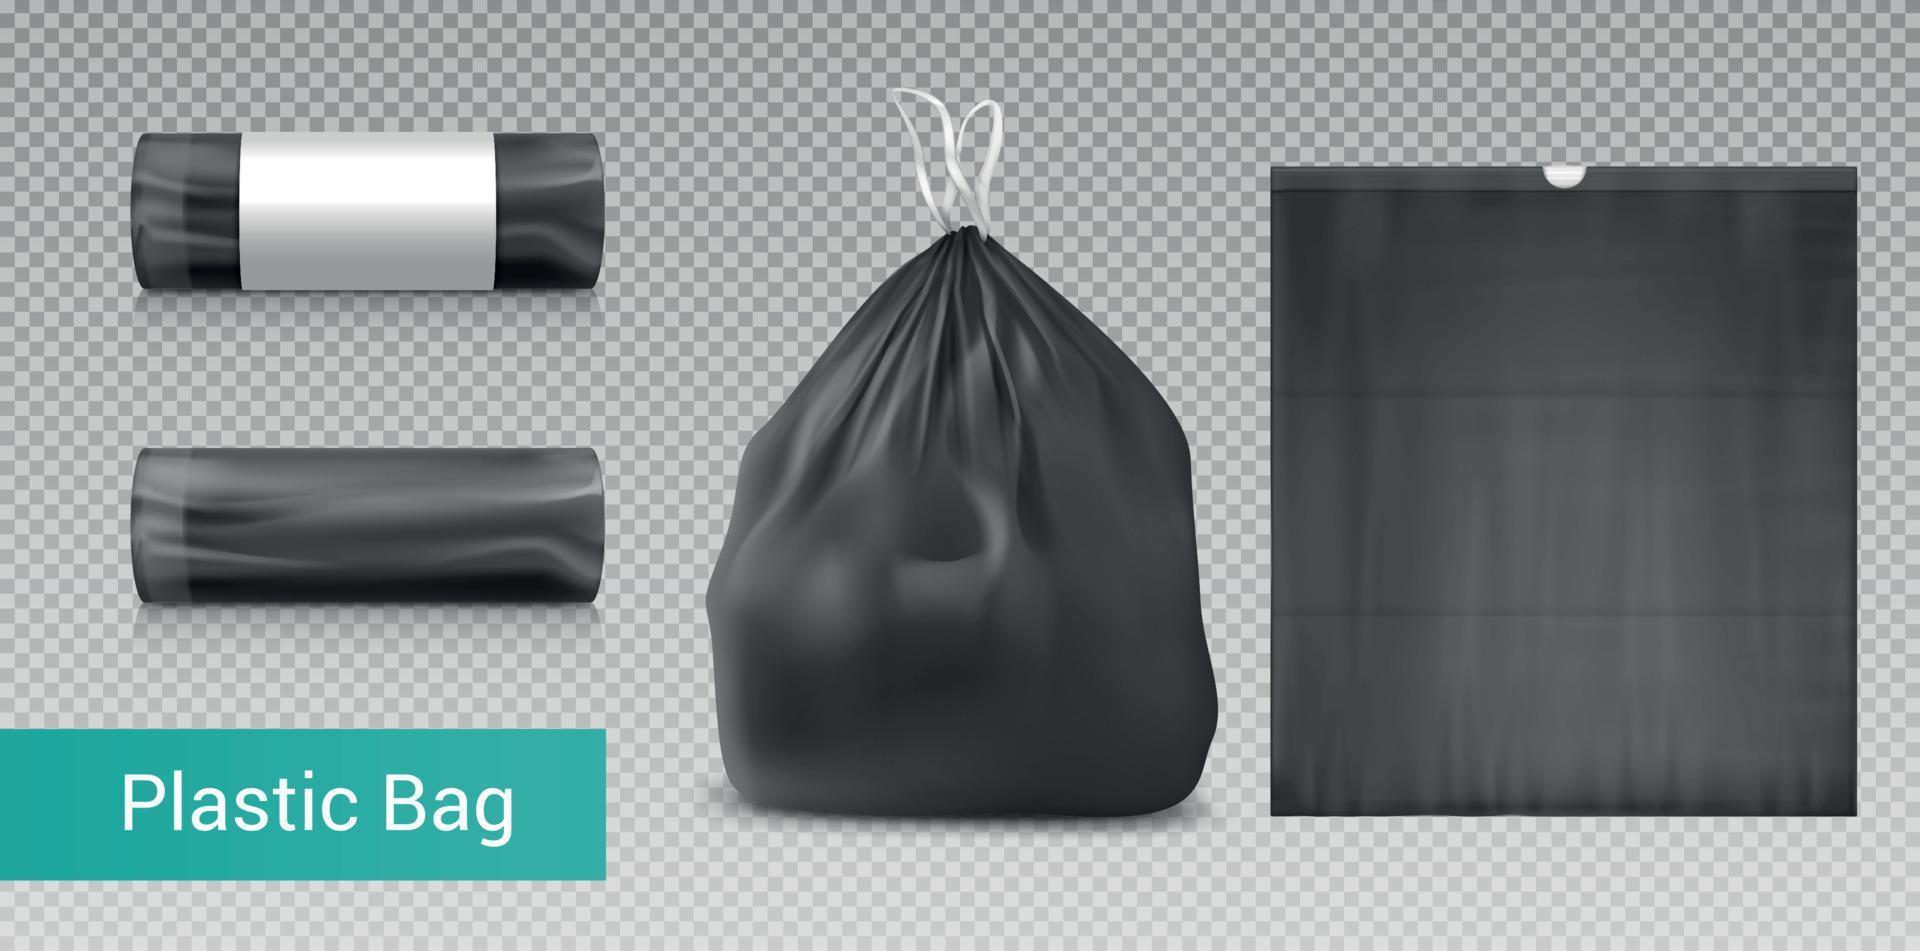 Plastic Trash Bags Set 3500695 Vector Art at Vecteezy